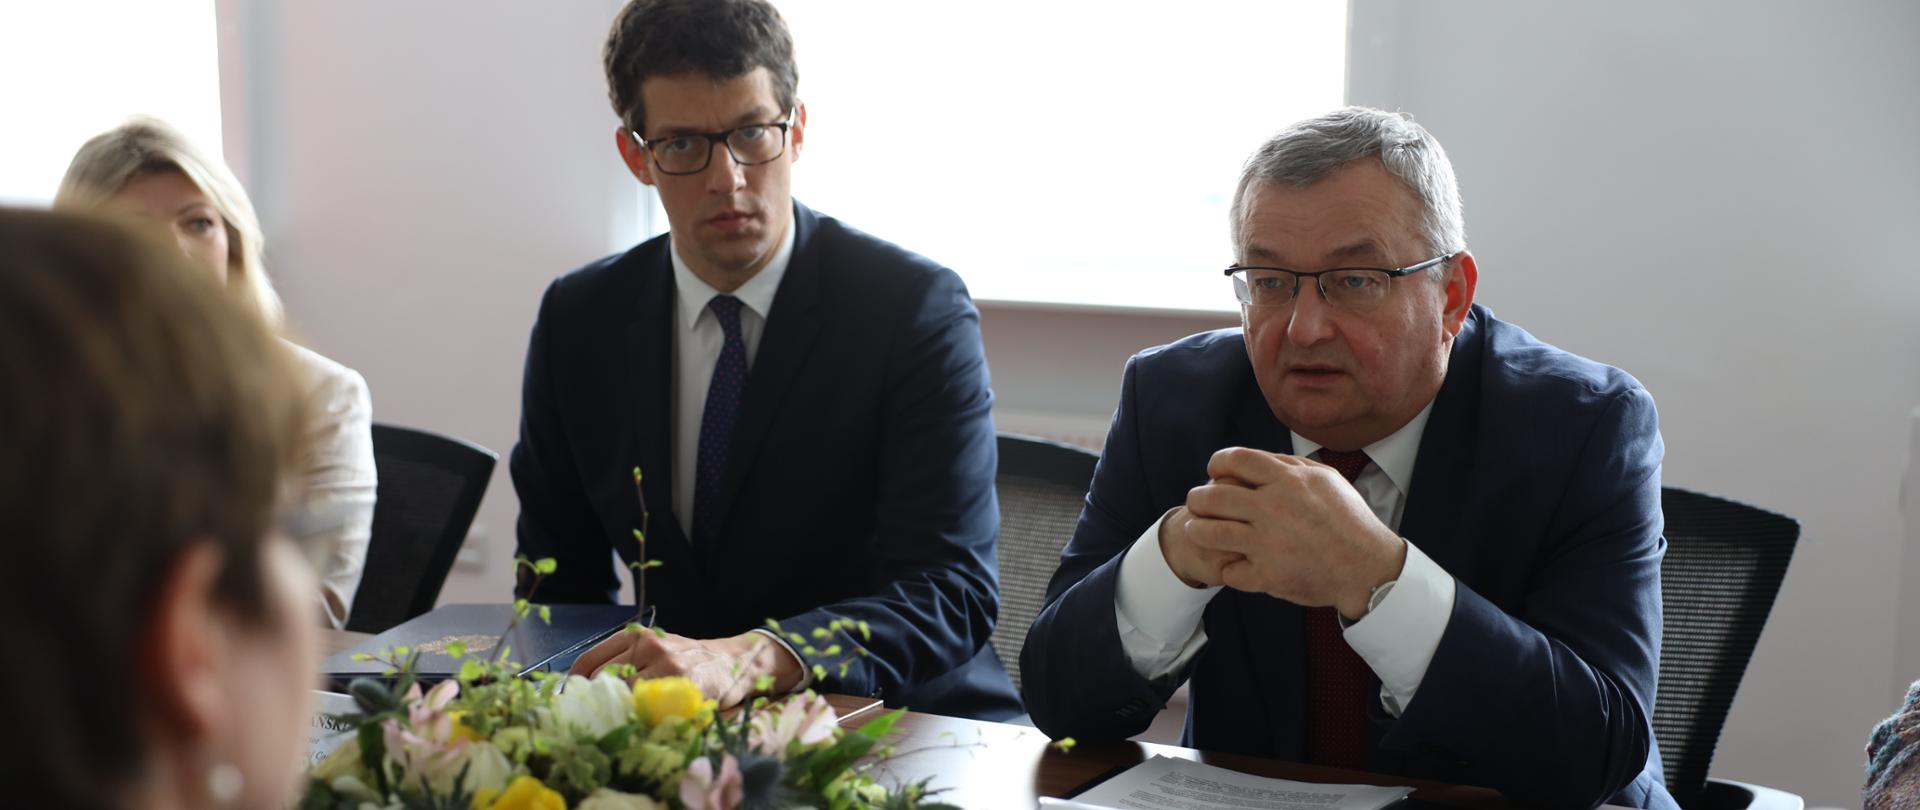 Minister infrastruktury Andrzej Adamczyk podczas spotkania z prezesem Europejskiego Banku Odbudowy i Rozwoju Odile Renaud-Basso.